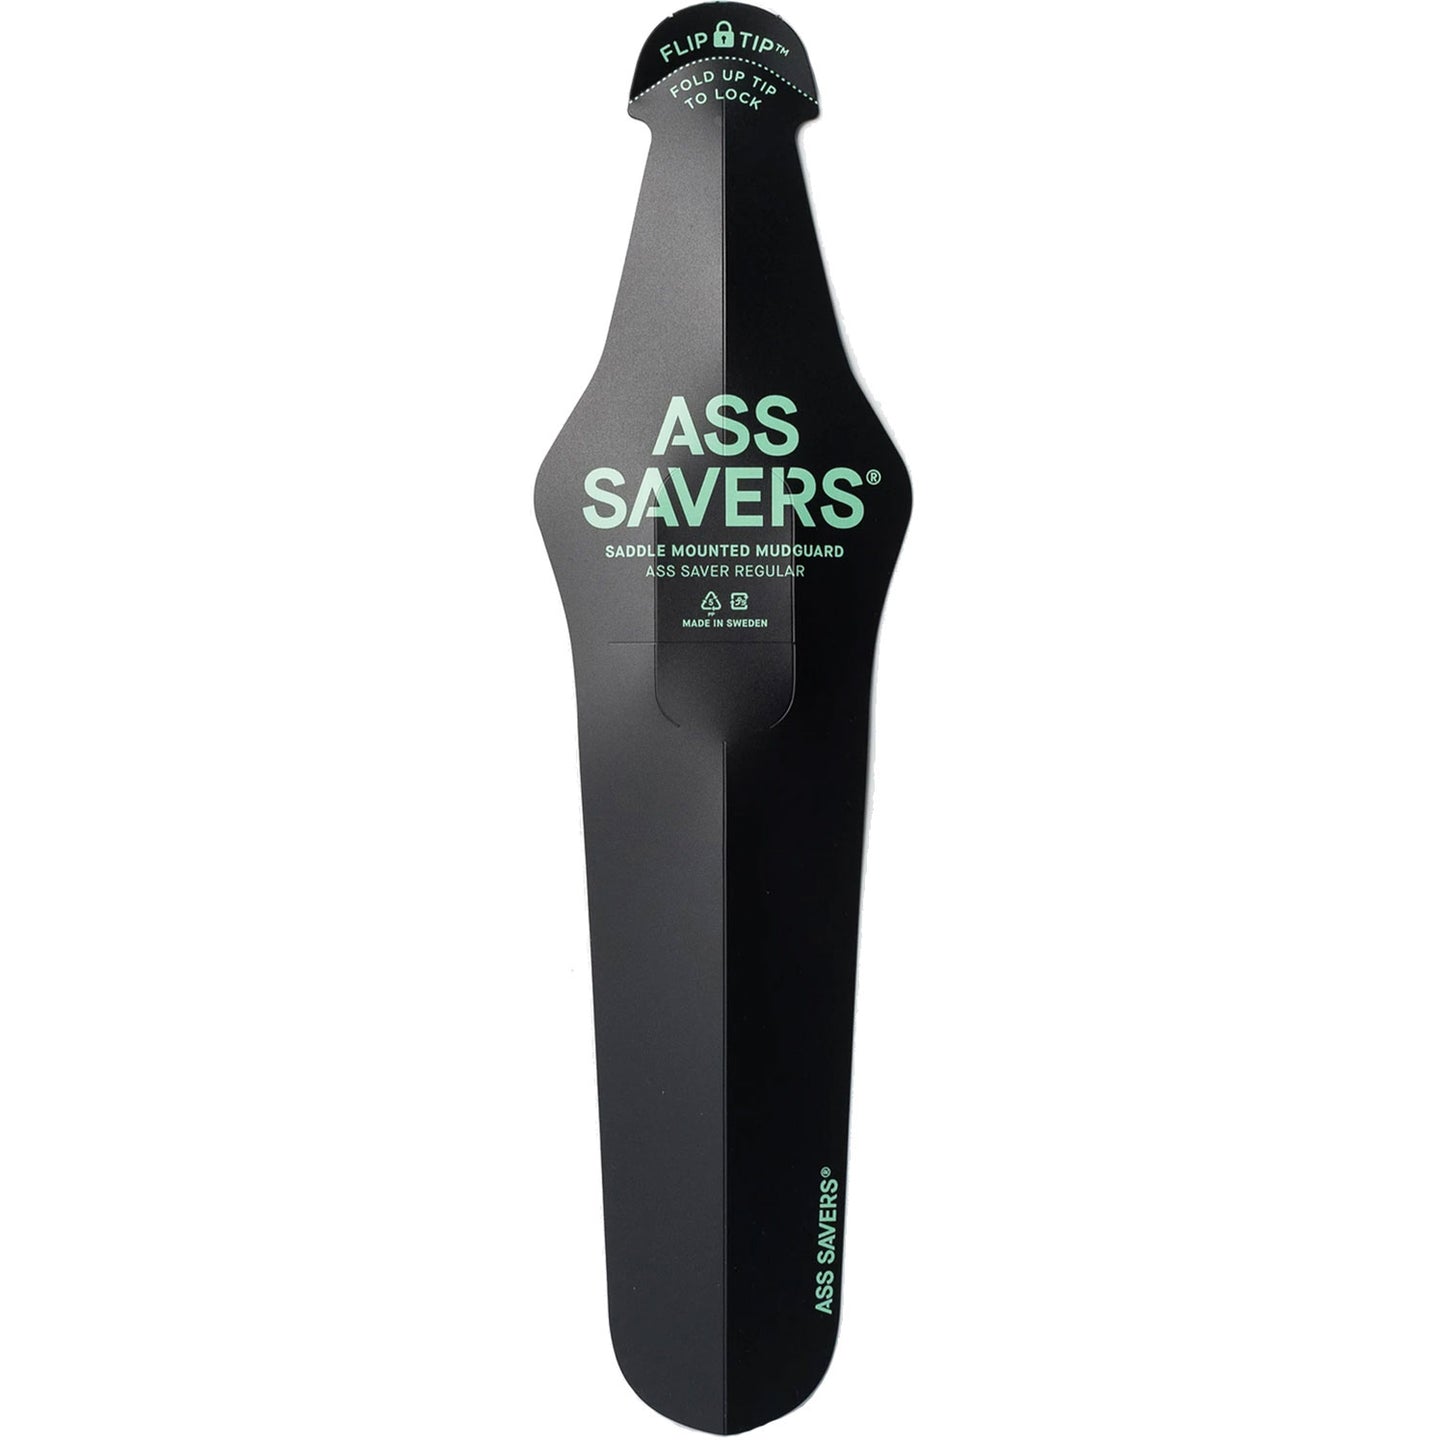 Ass Savers Regular Rear Mudguard - Black